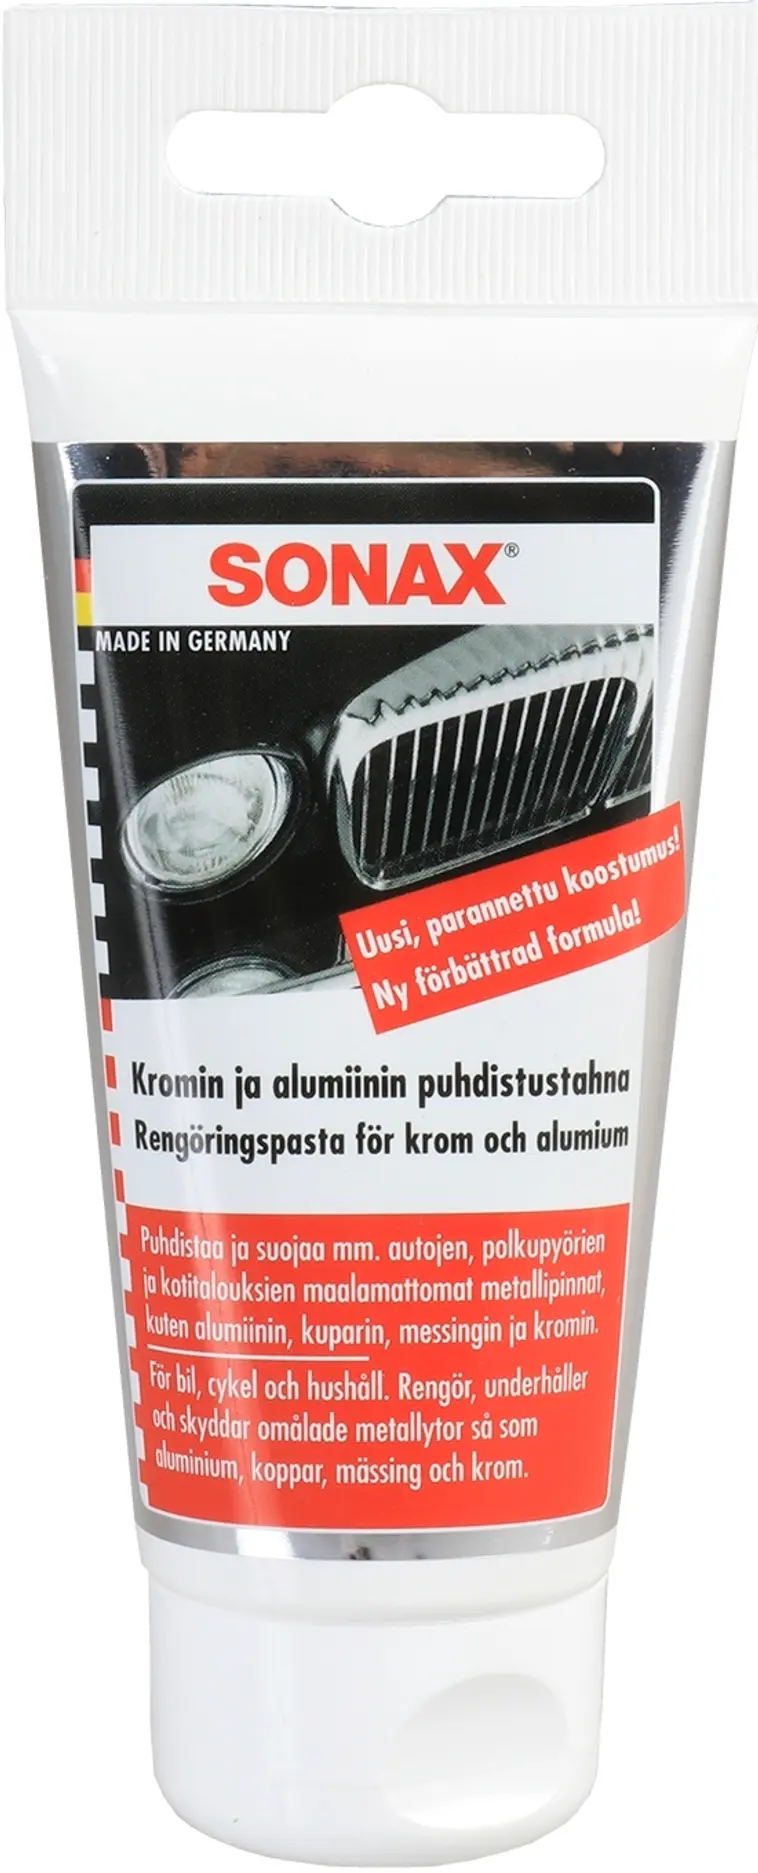 Sonax 75ml alumiinin puhdistusaine